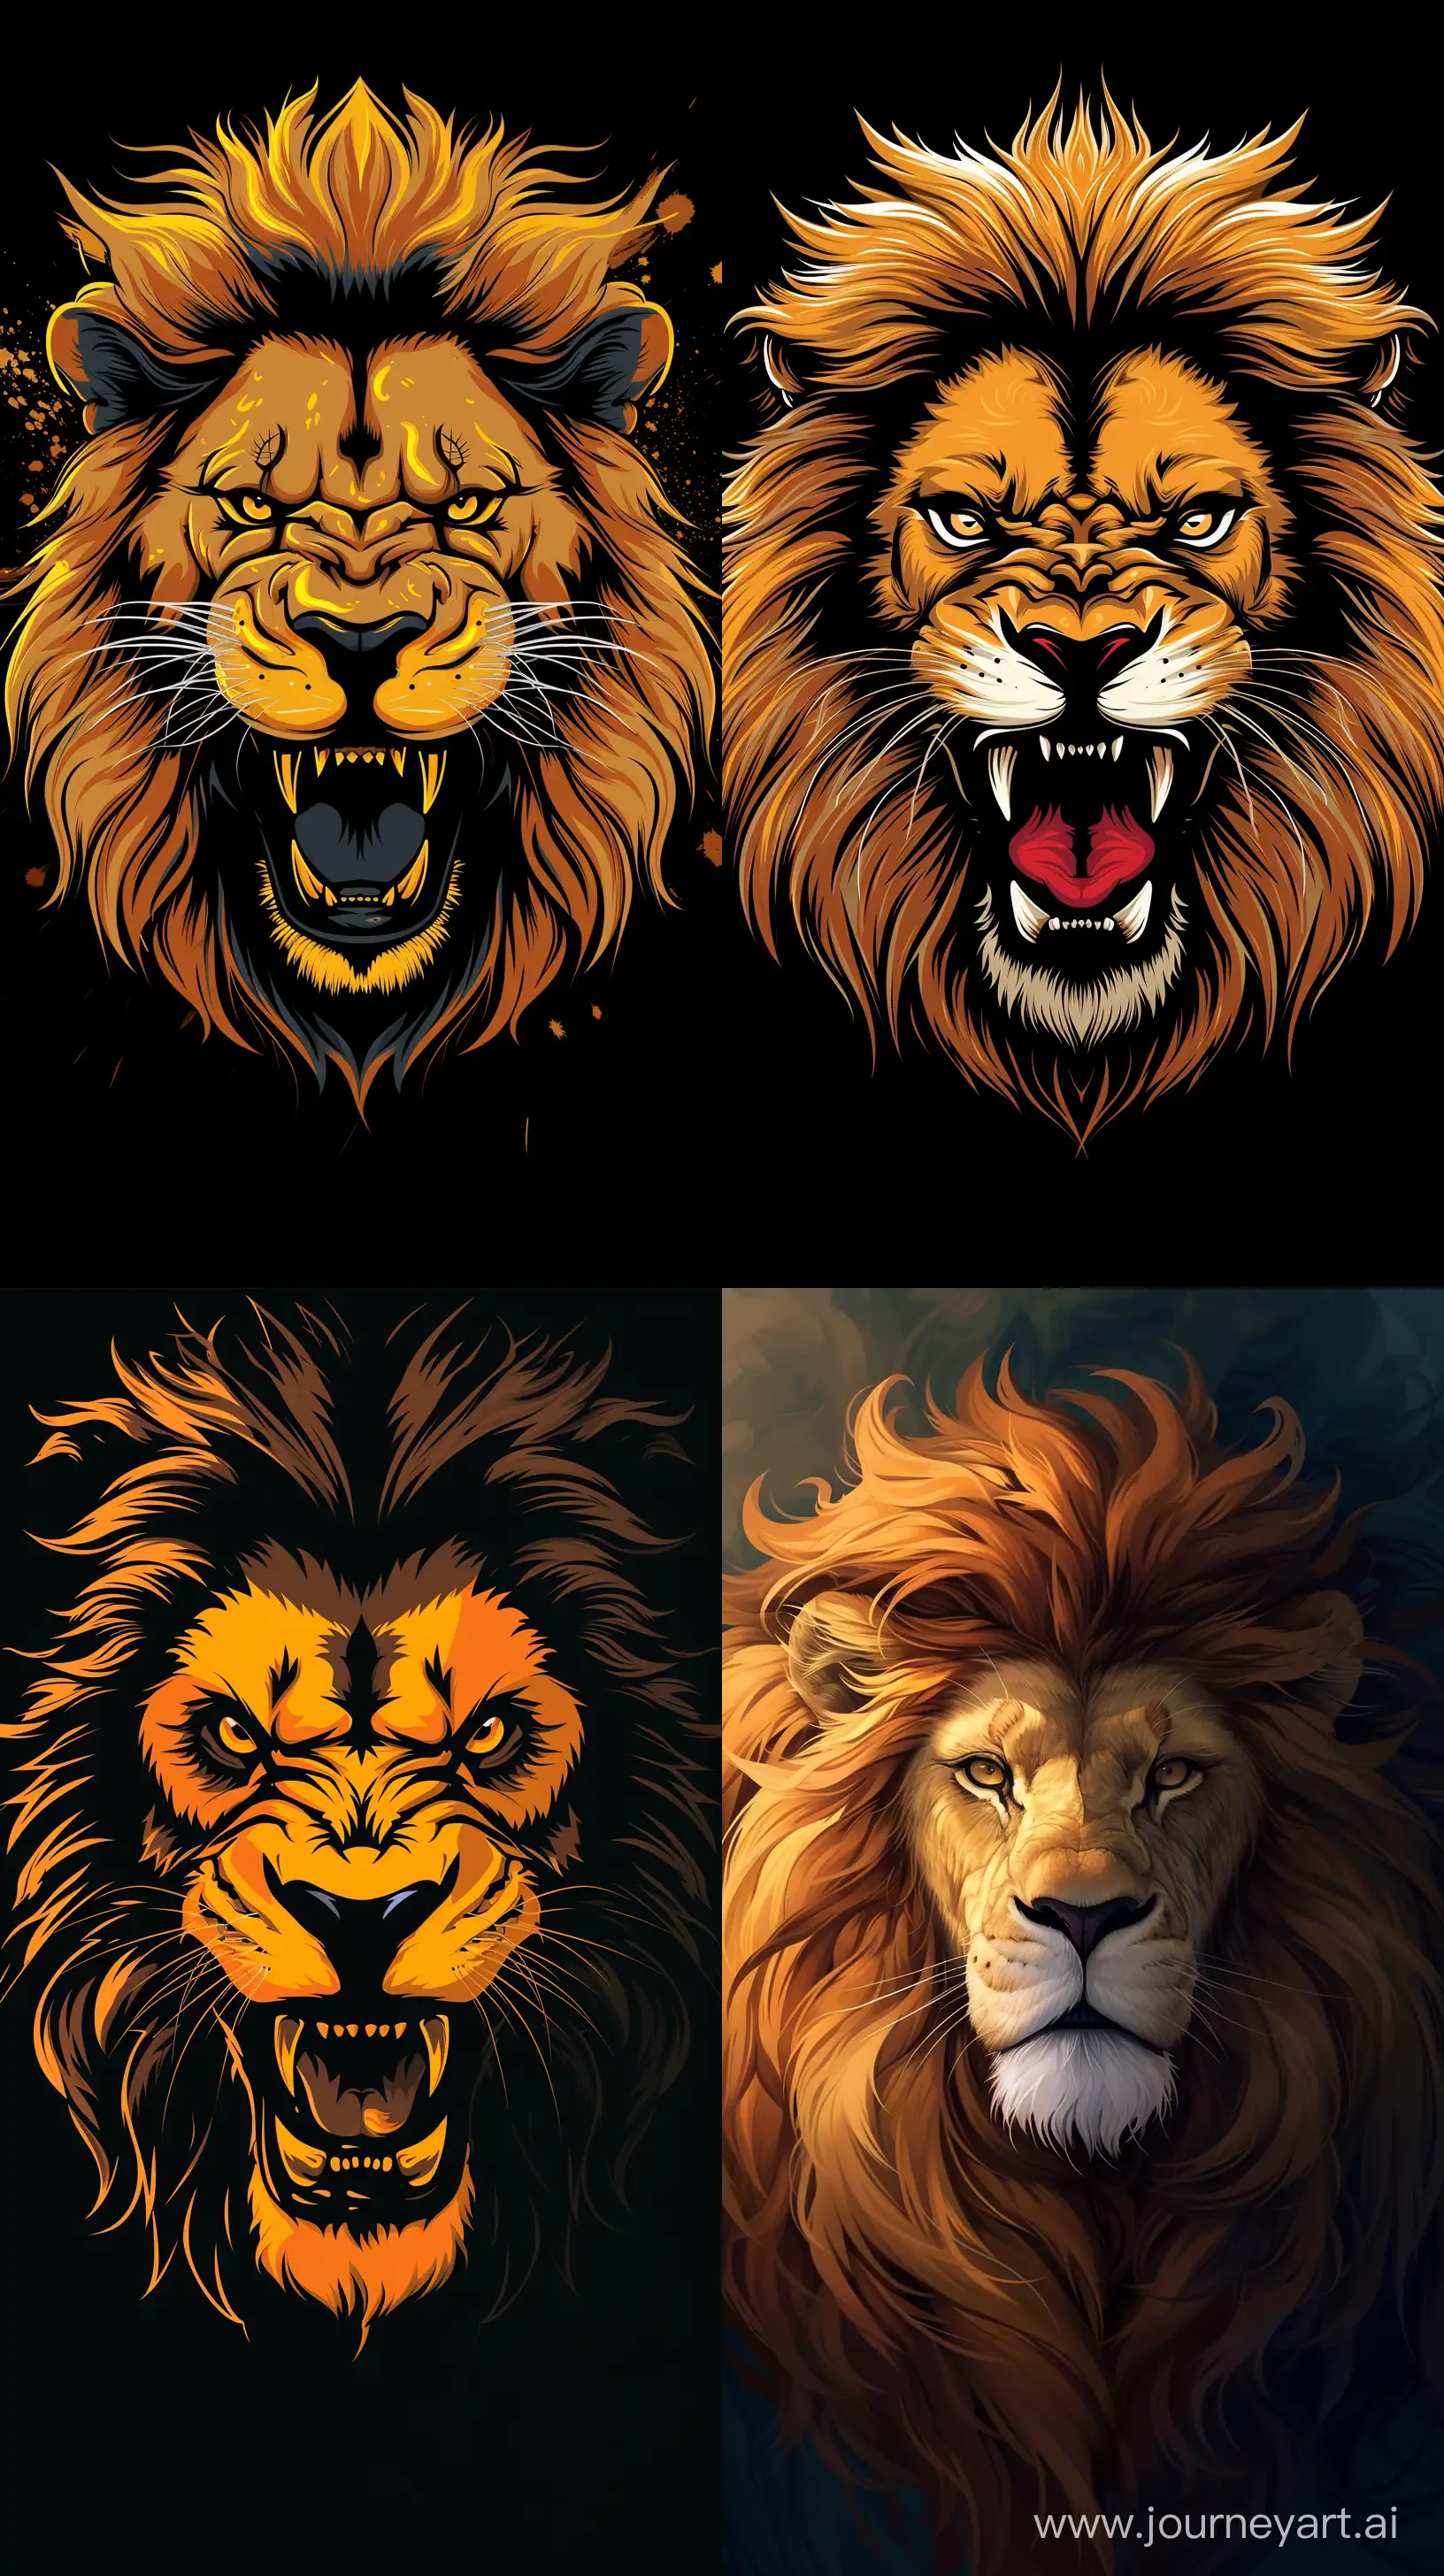 Majestic-Lion-Portrait-in-Artistic-Wallpaper-Design